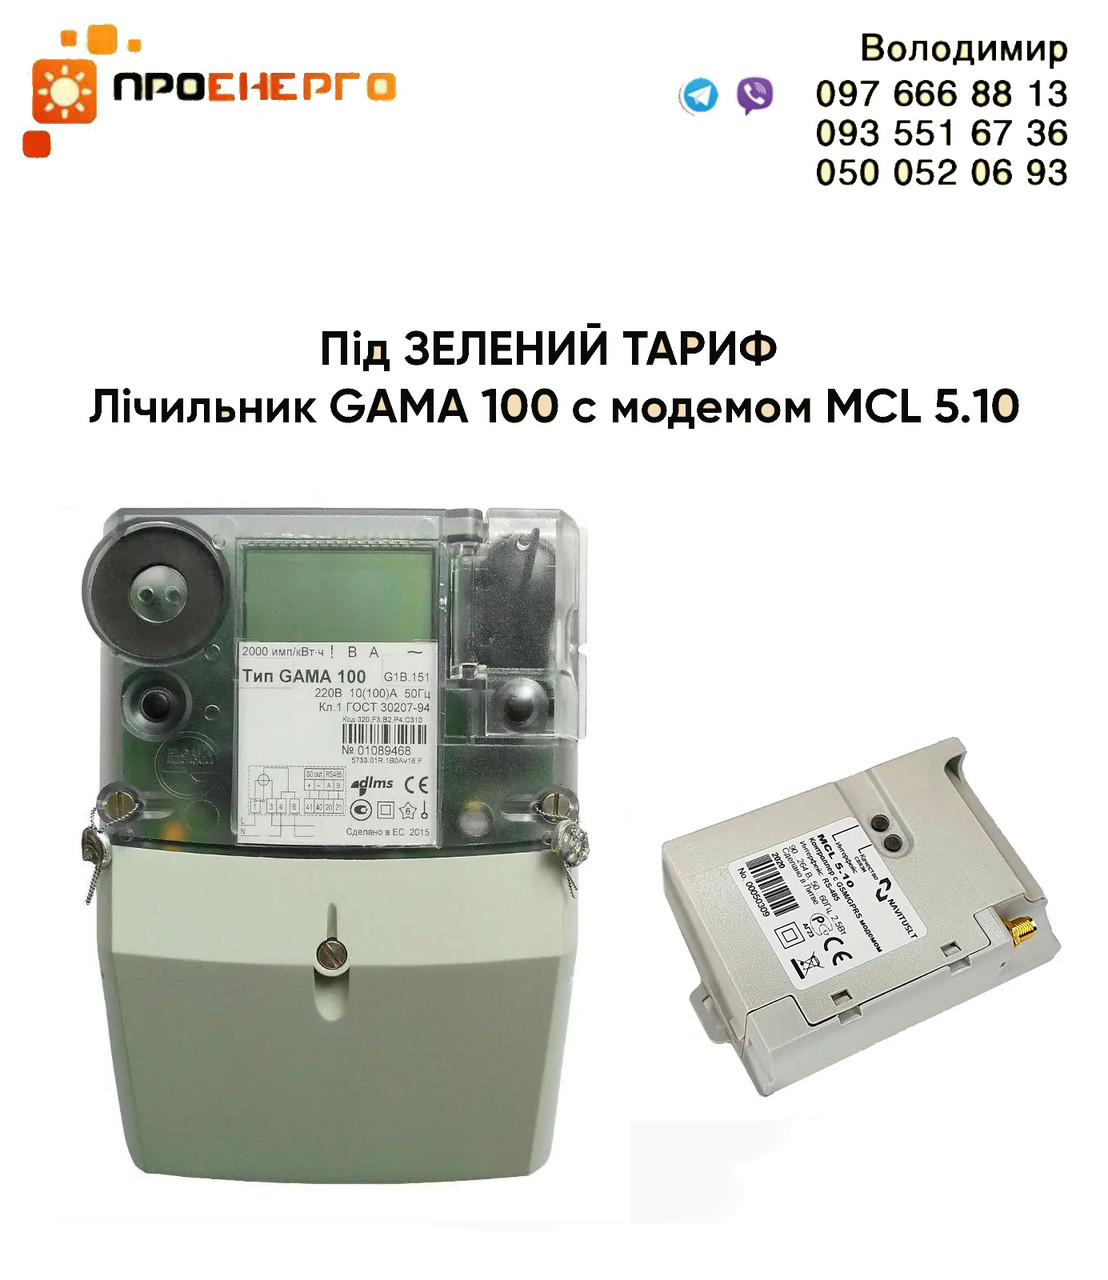 Лічильник для Зеленого тарифу GAMA 100 G1B.164.220.F3.В2.P4.C310. V1 з модемом MCL 5.10, фото 1